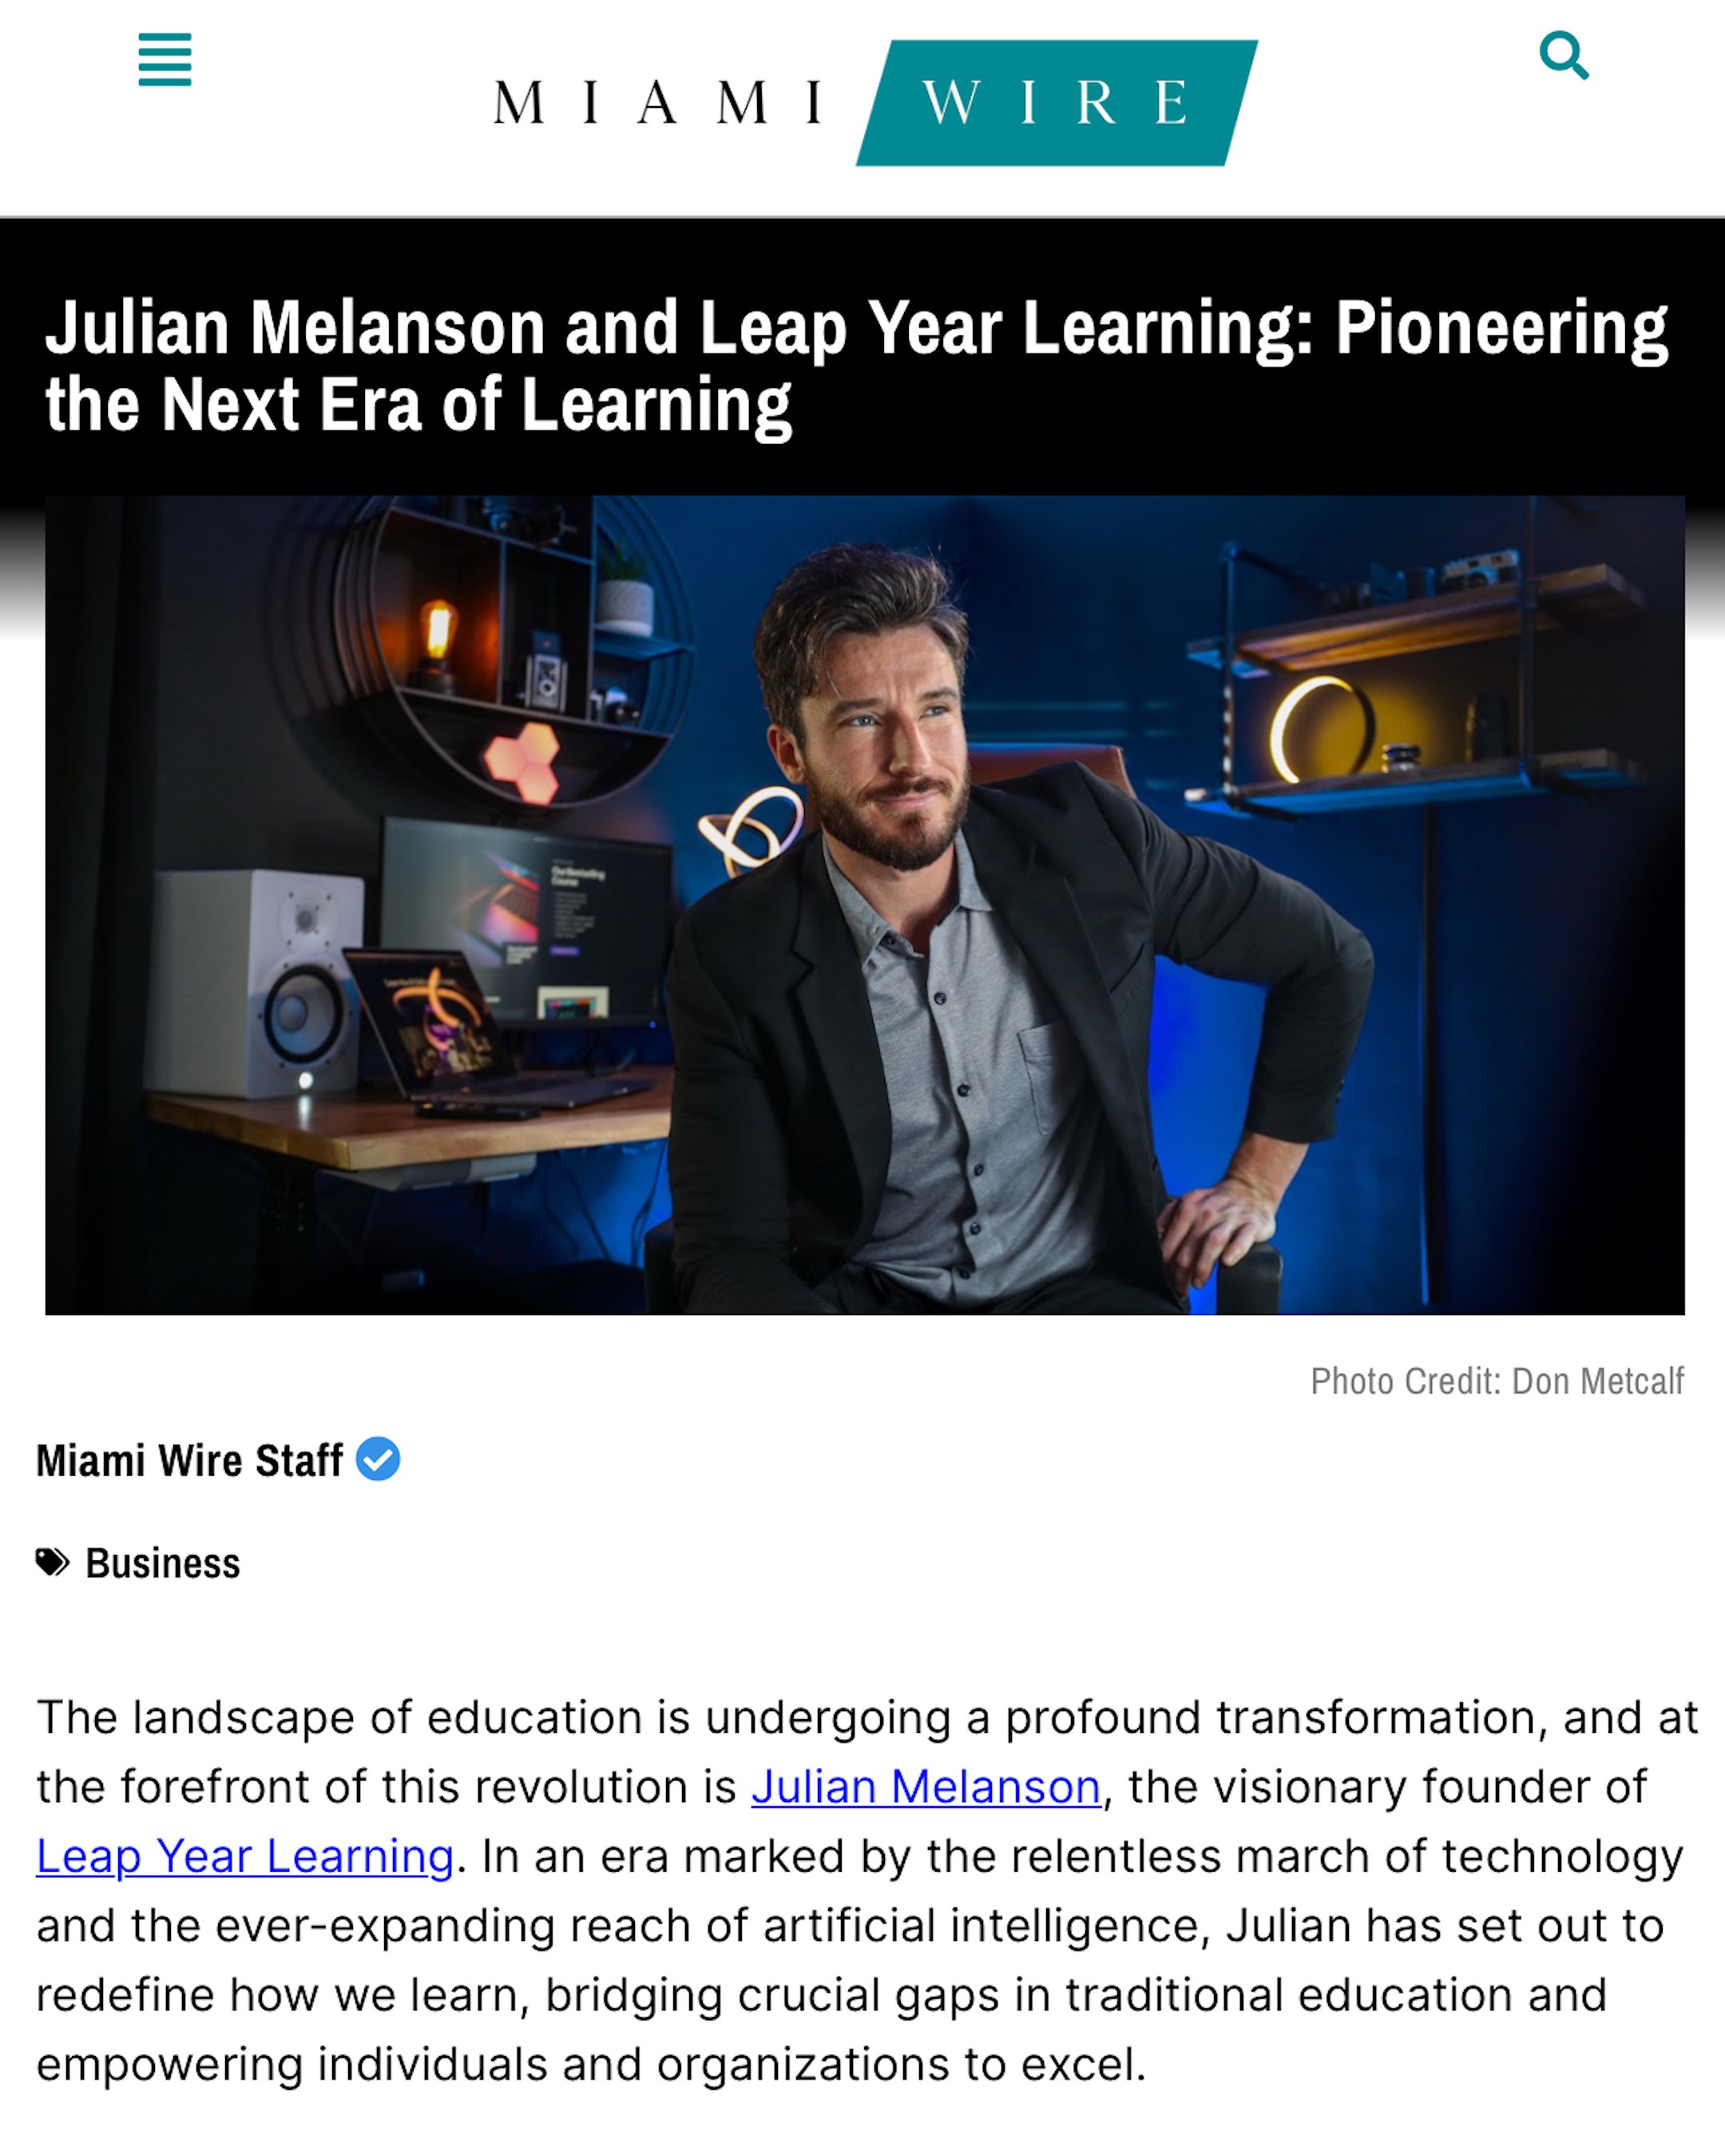 MIAMI WIRE JULIAN MELANSON AI EXPERT FILMMAKER DIRECTOR ONLINE TEACHER CEO WEEKLY.jpg